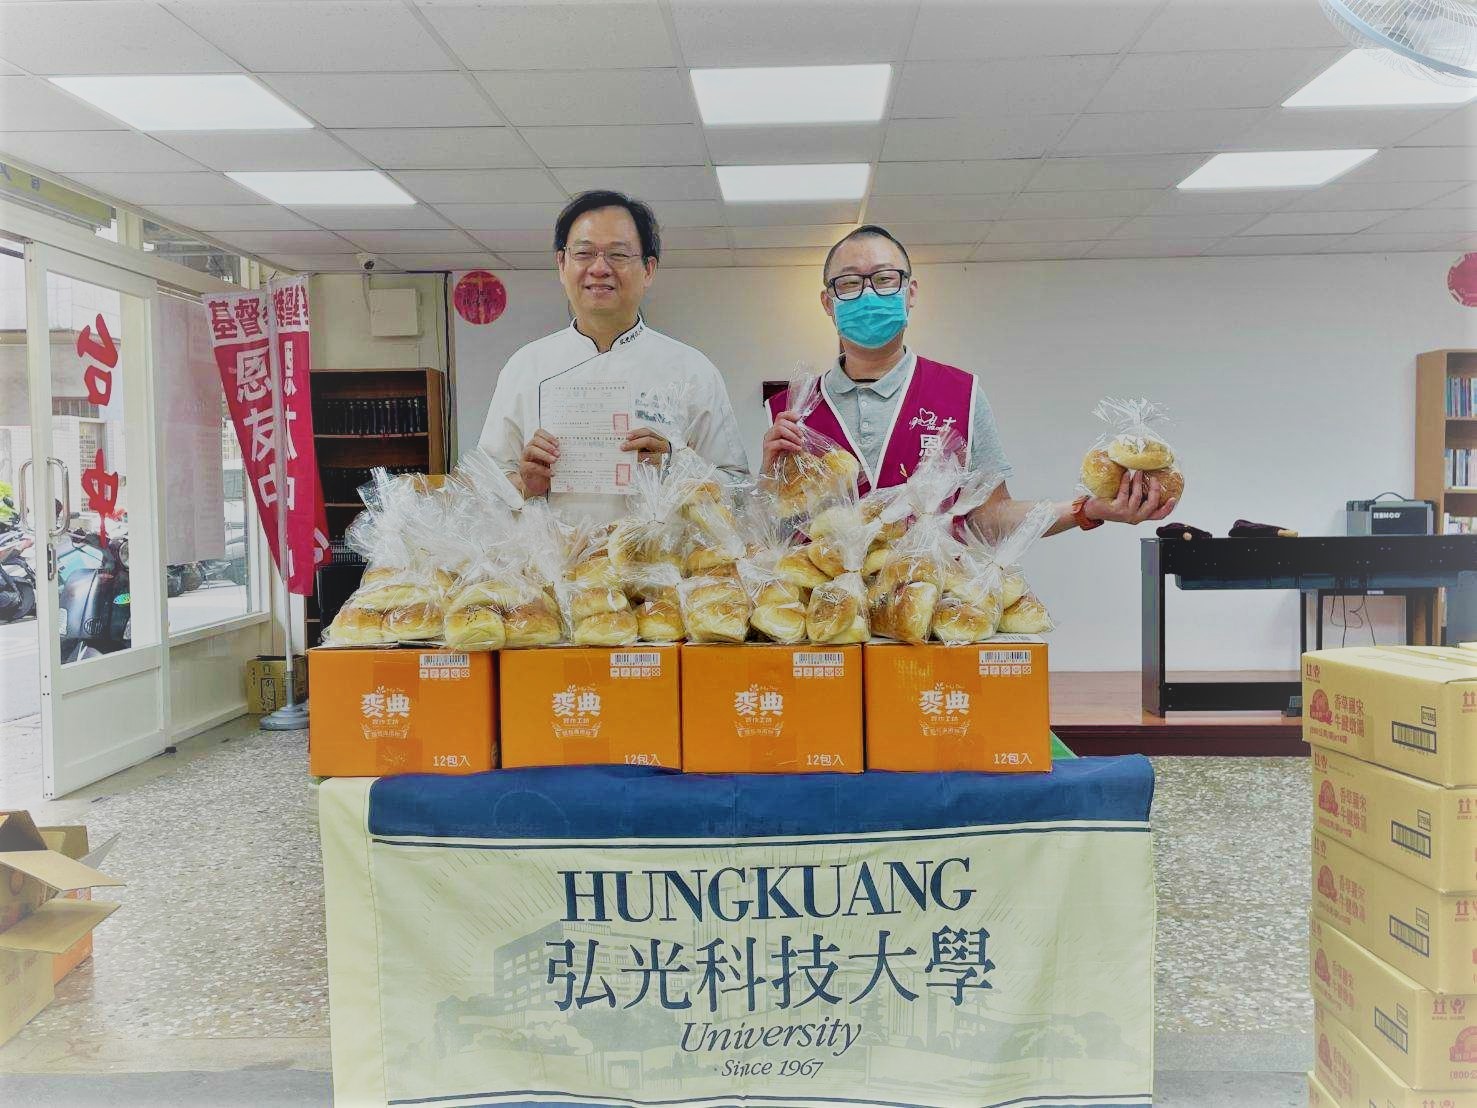 感謝 弘光科技大學餐旅系 捐贈300個麵包